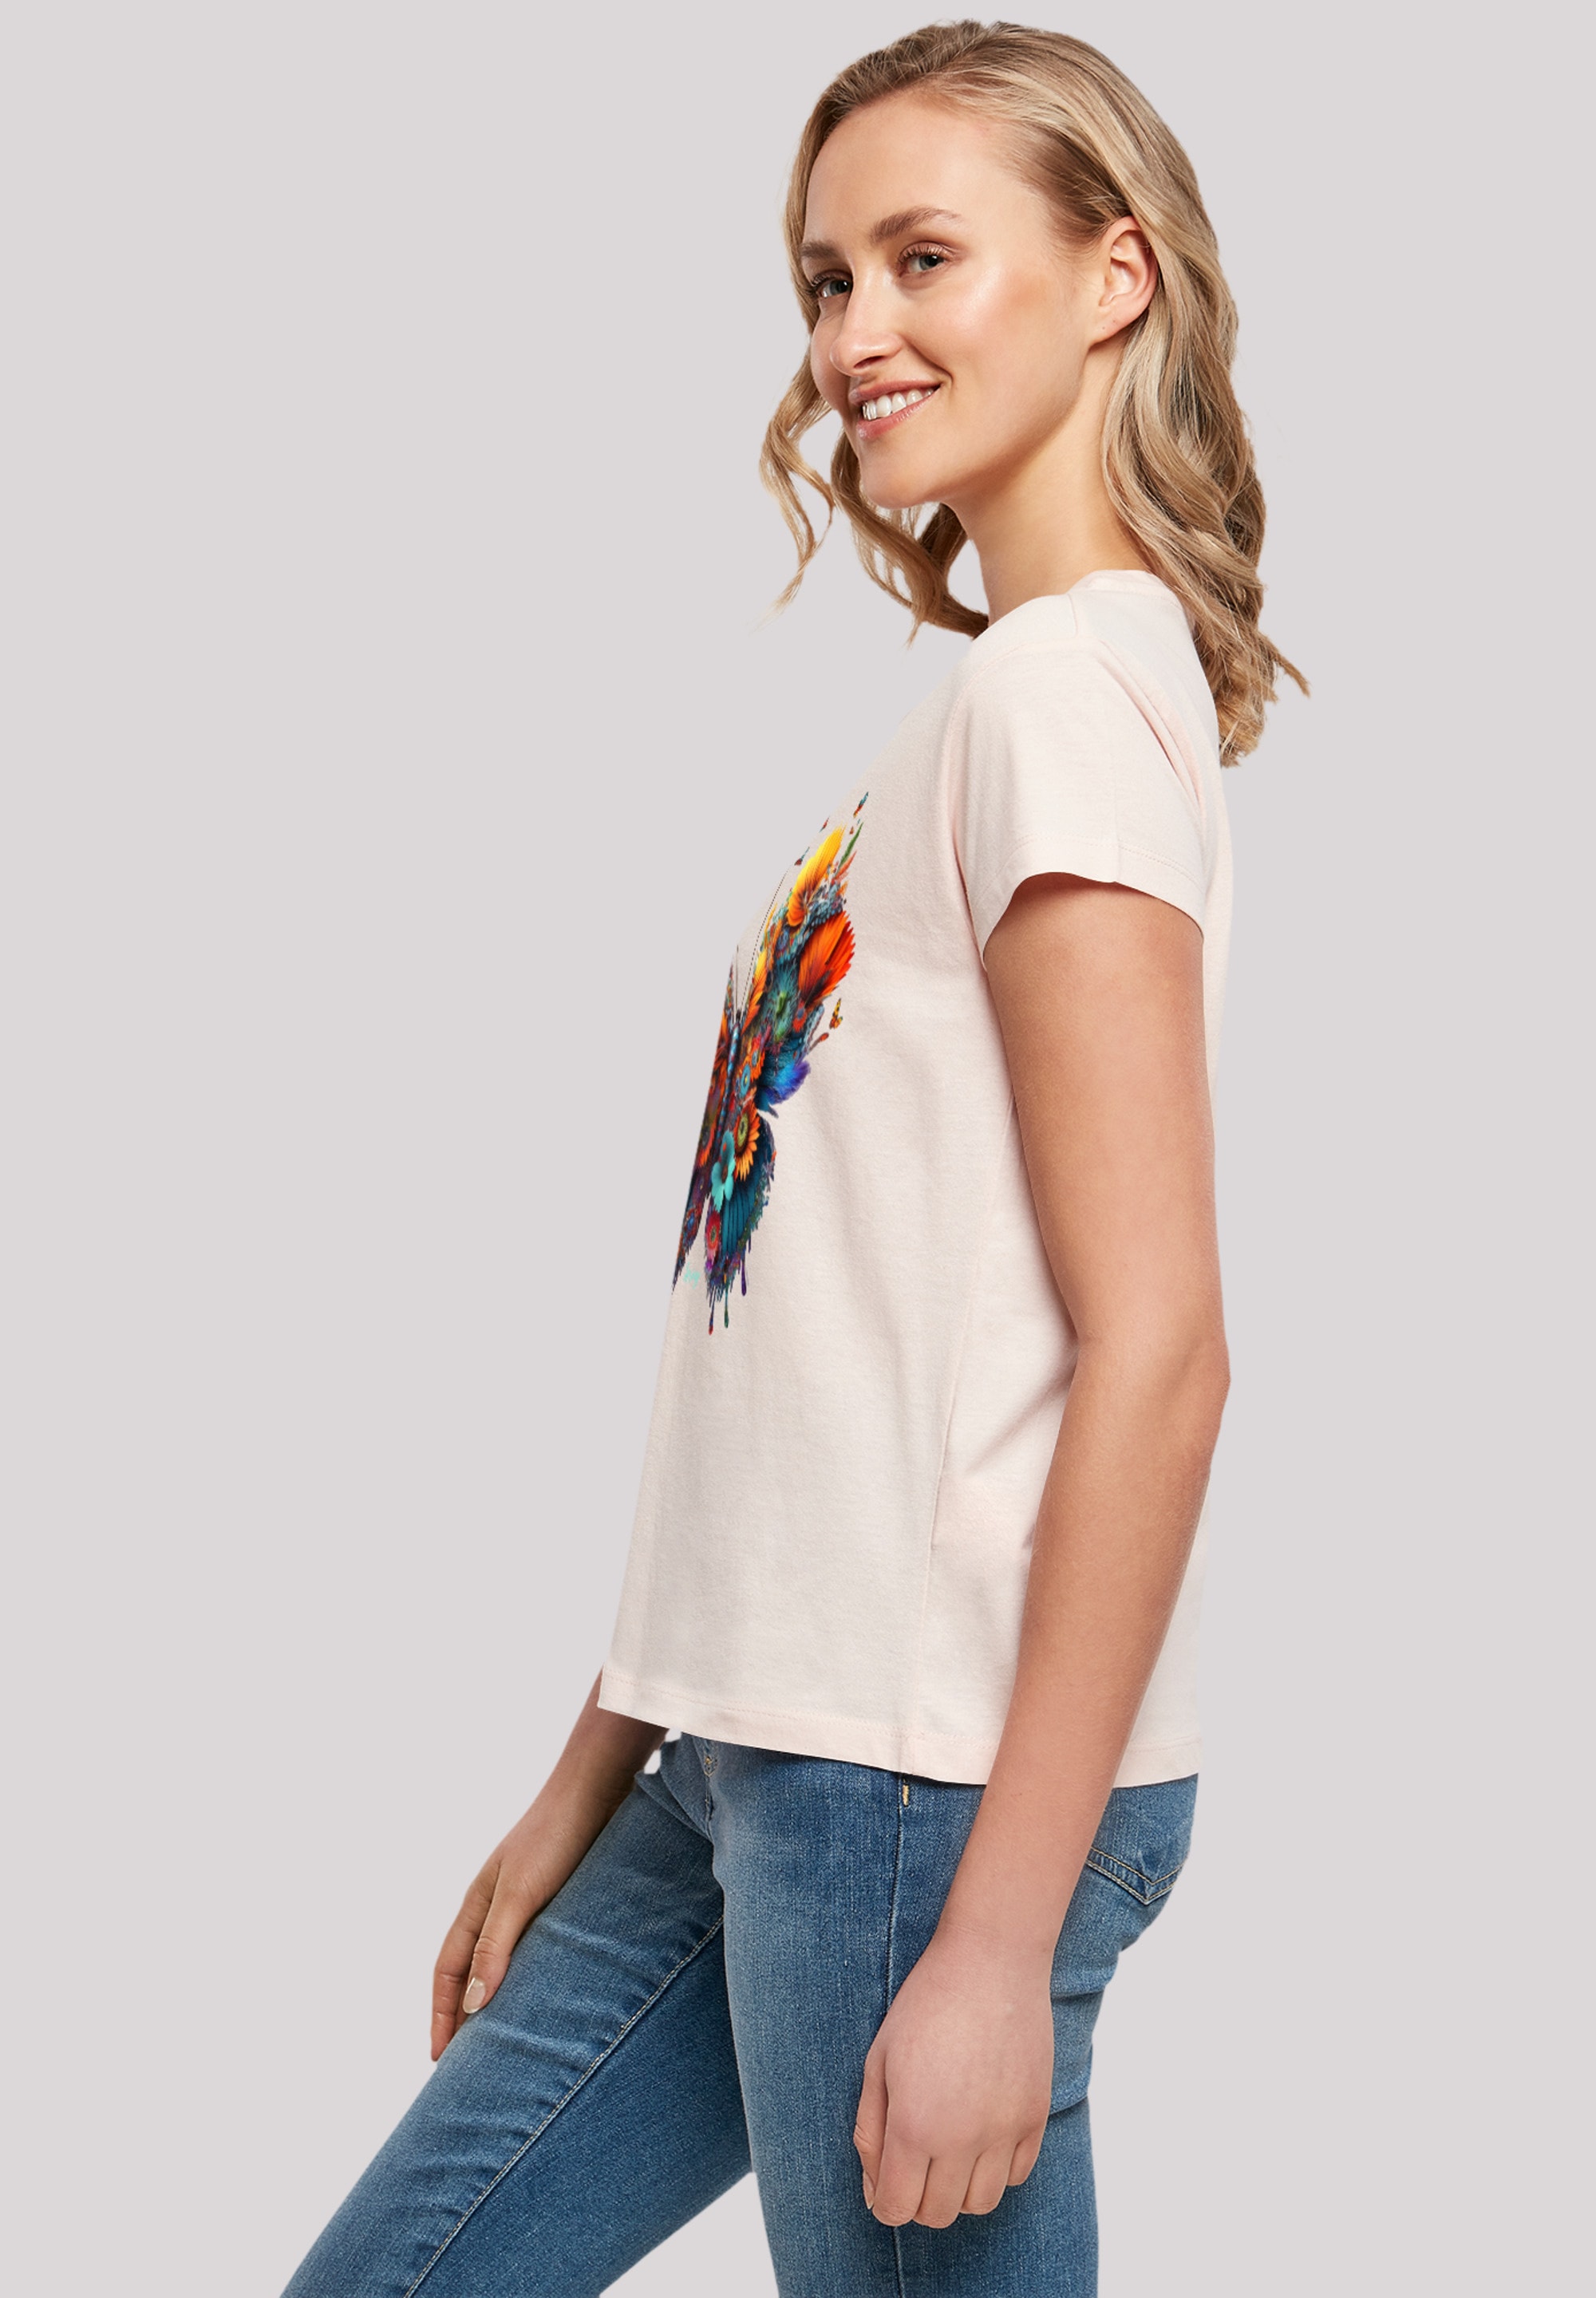 F4NT4STIC T-Shirt »Schmetterling Blume«, Print